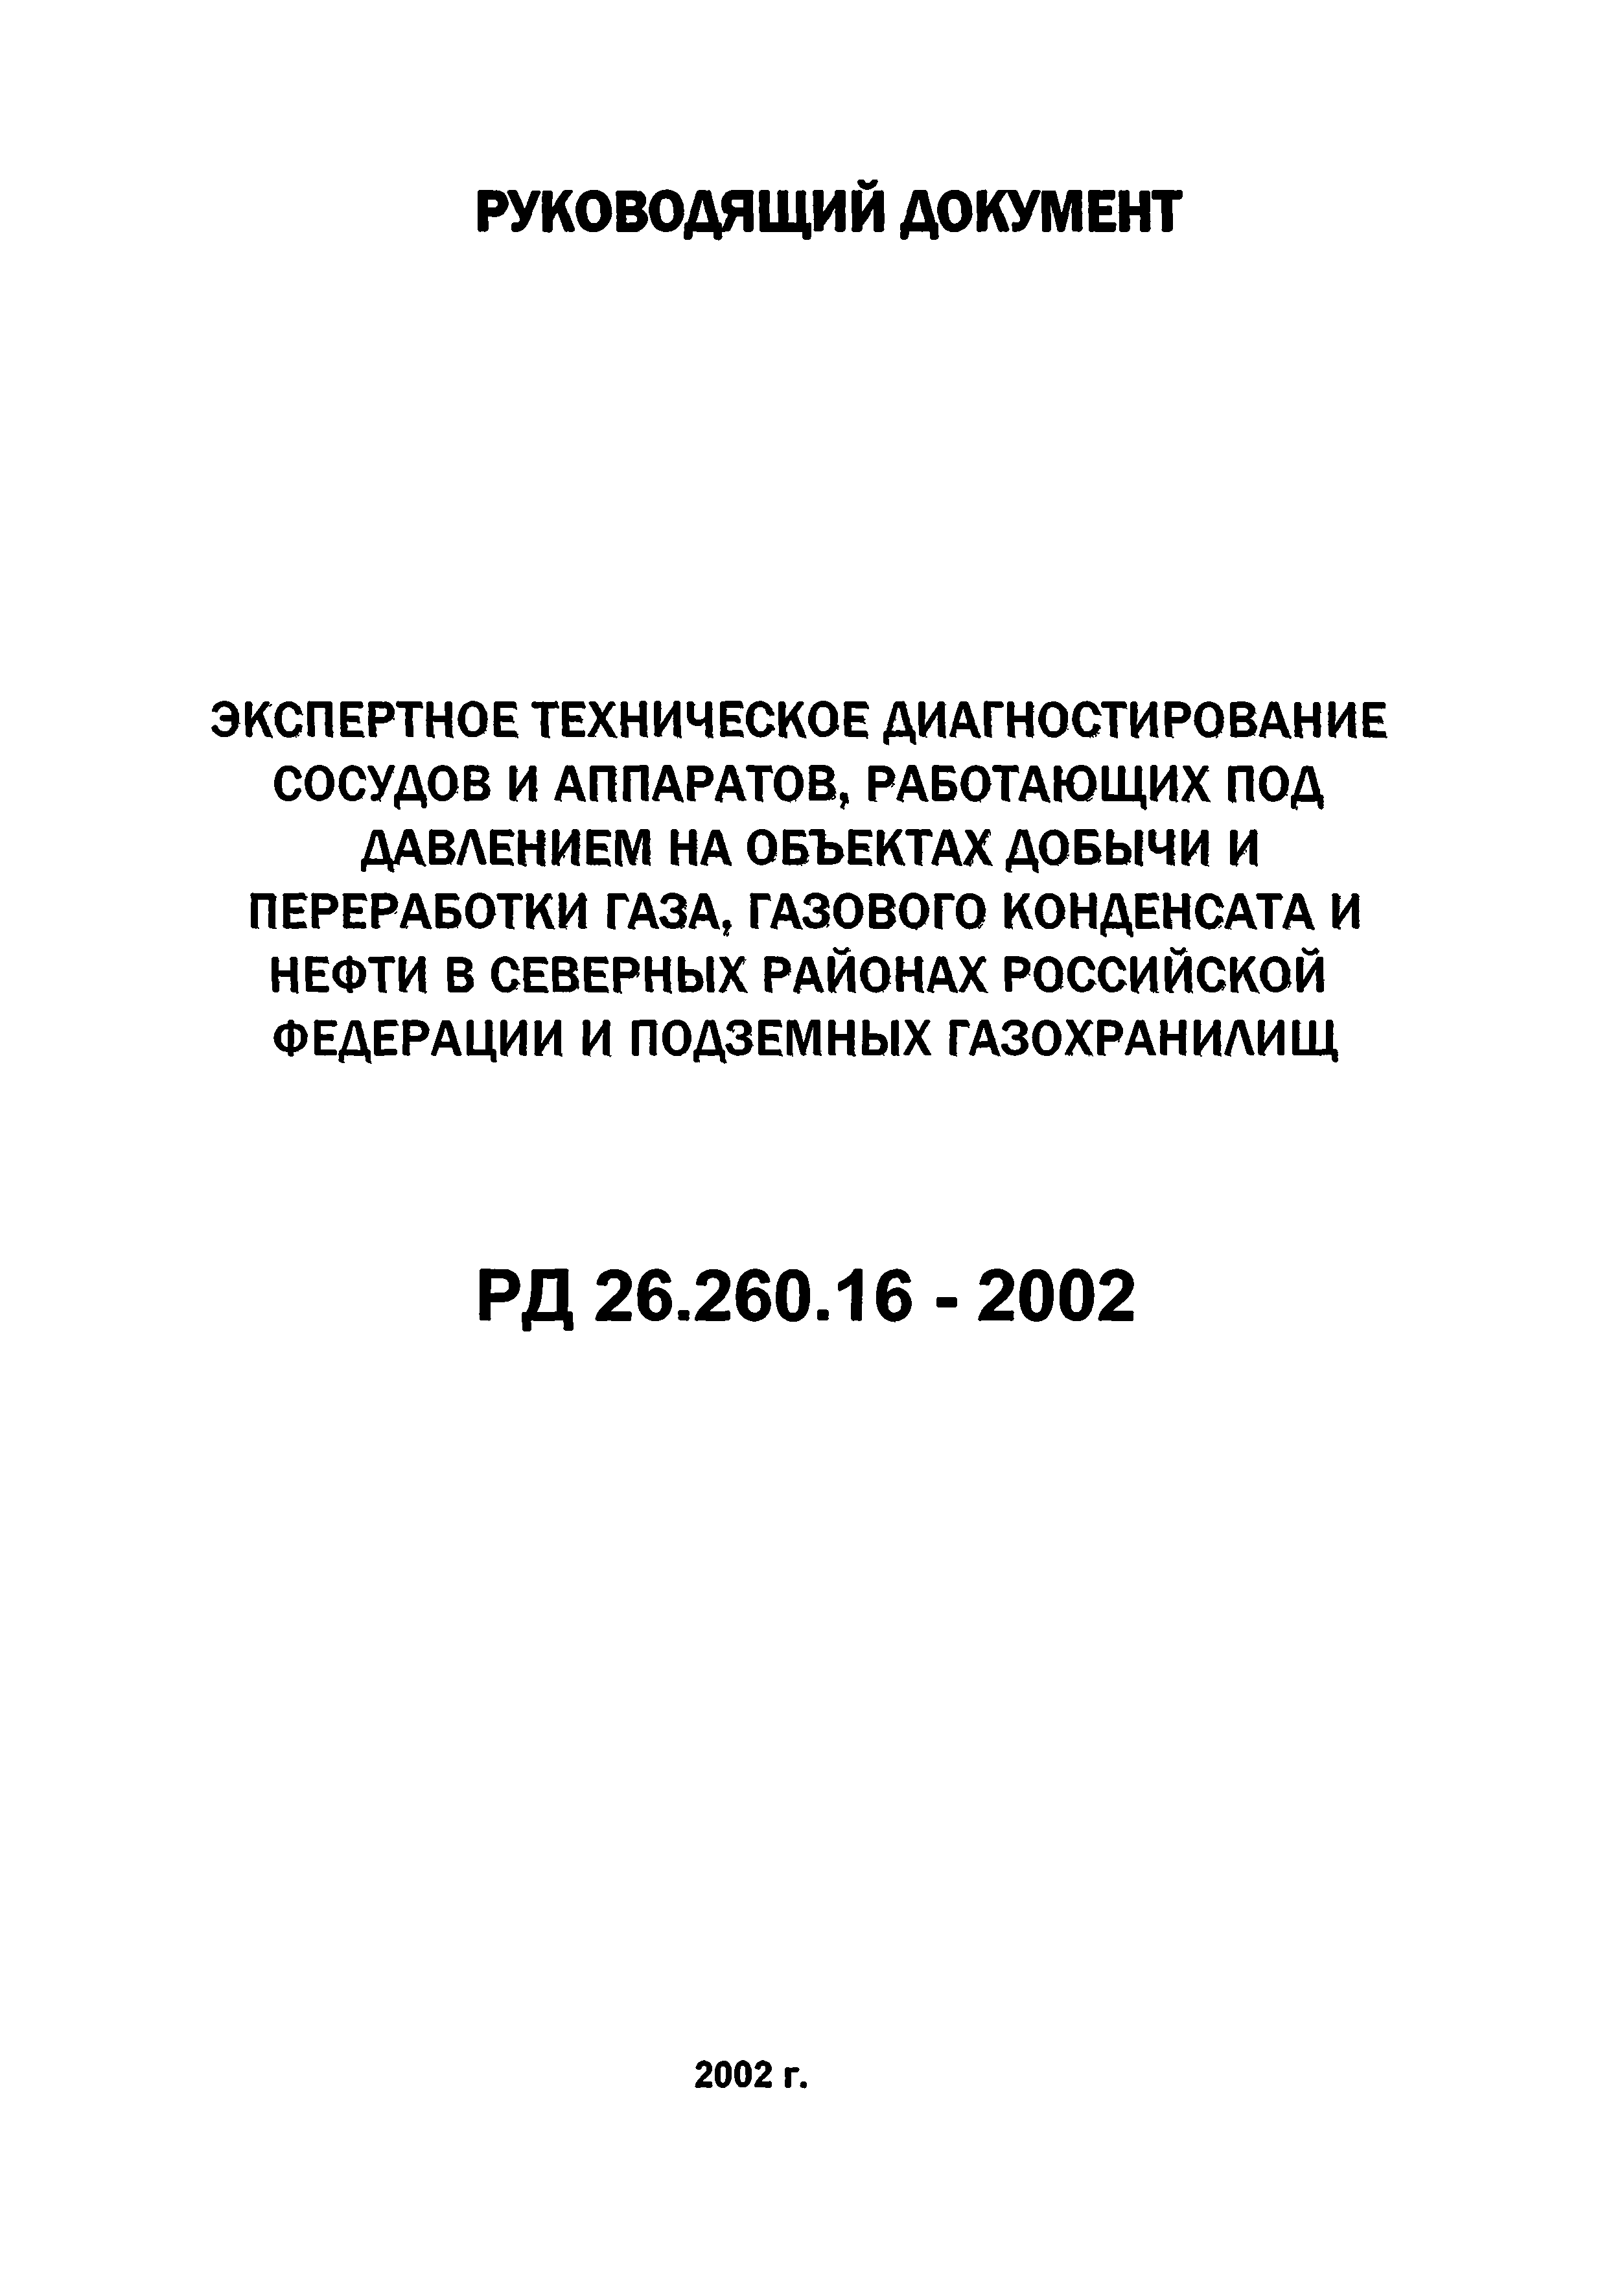 РД 26.260.16-2002